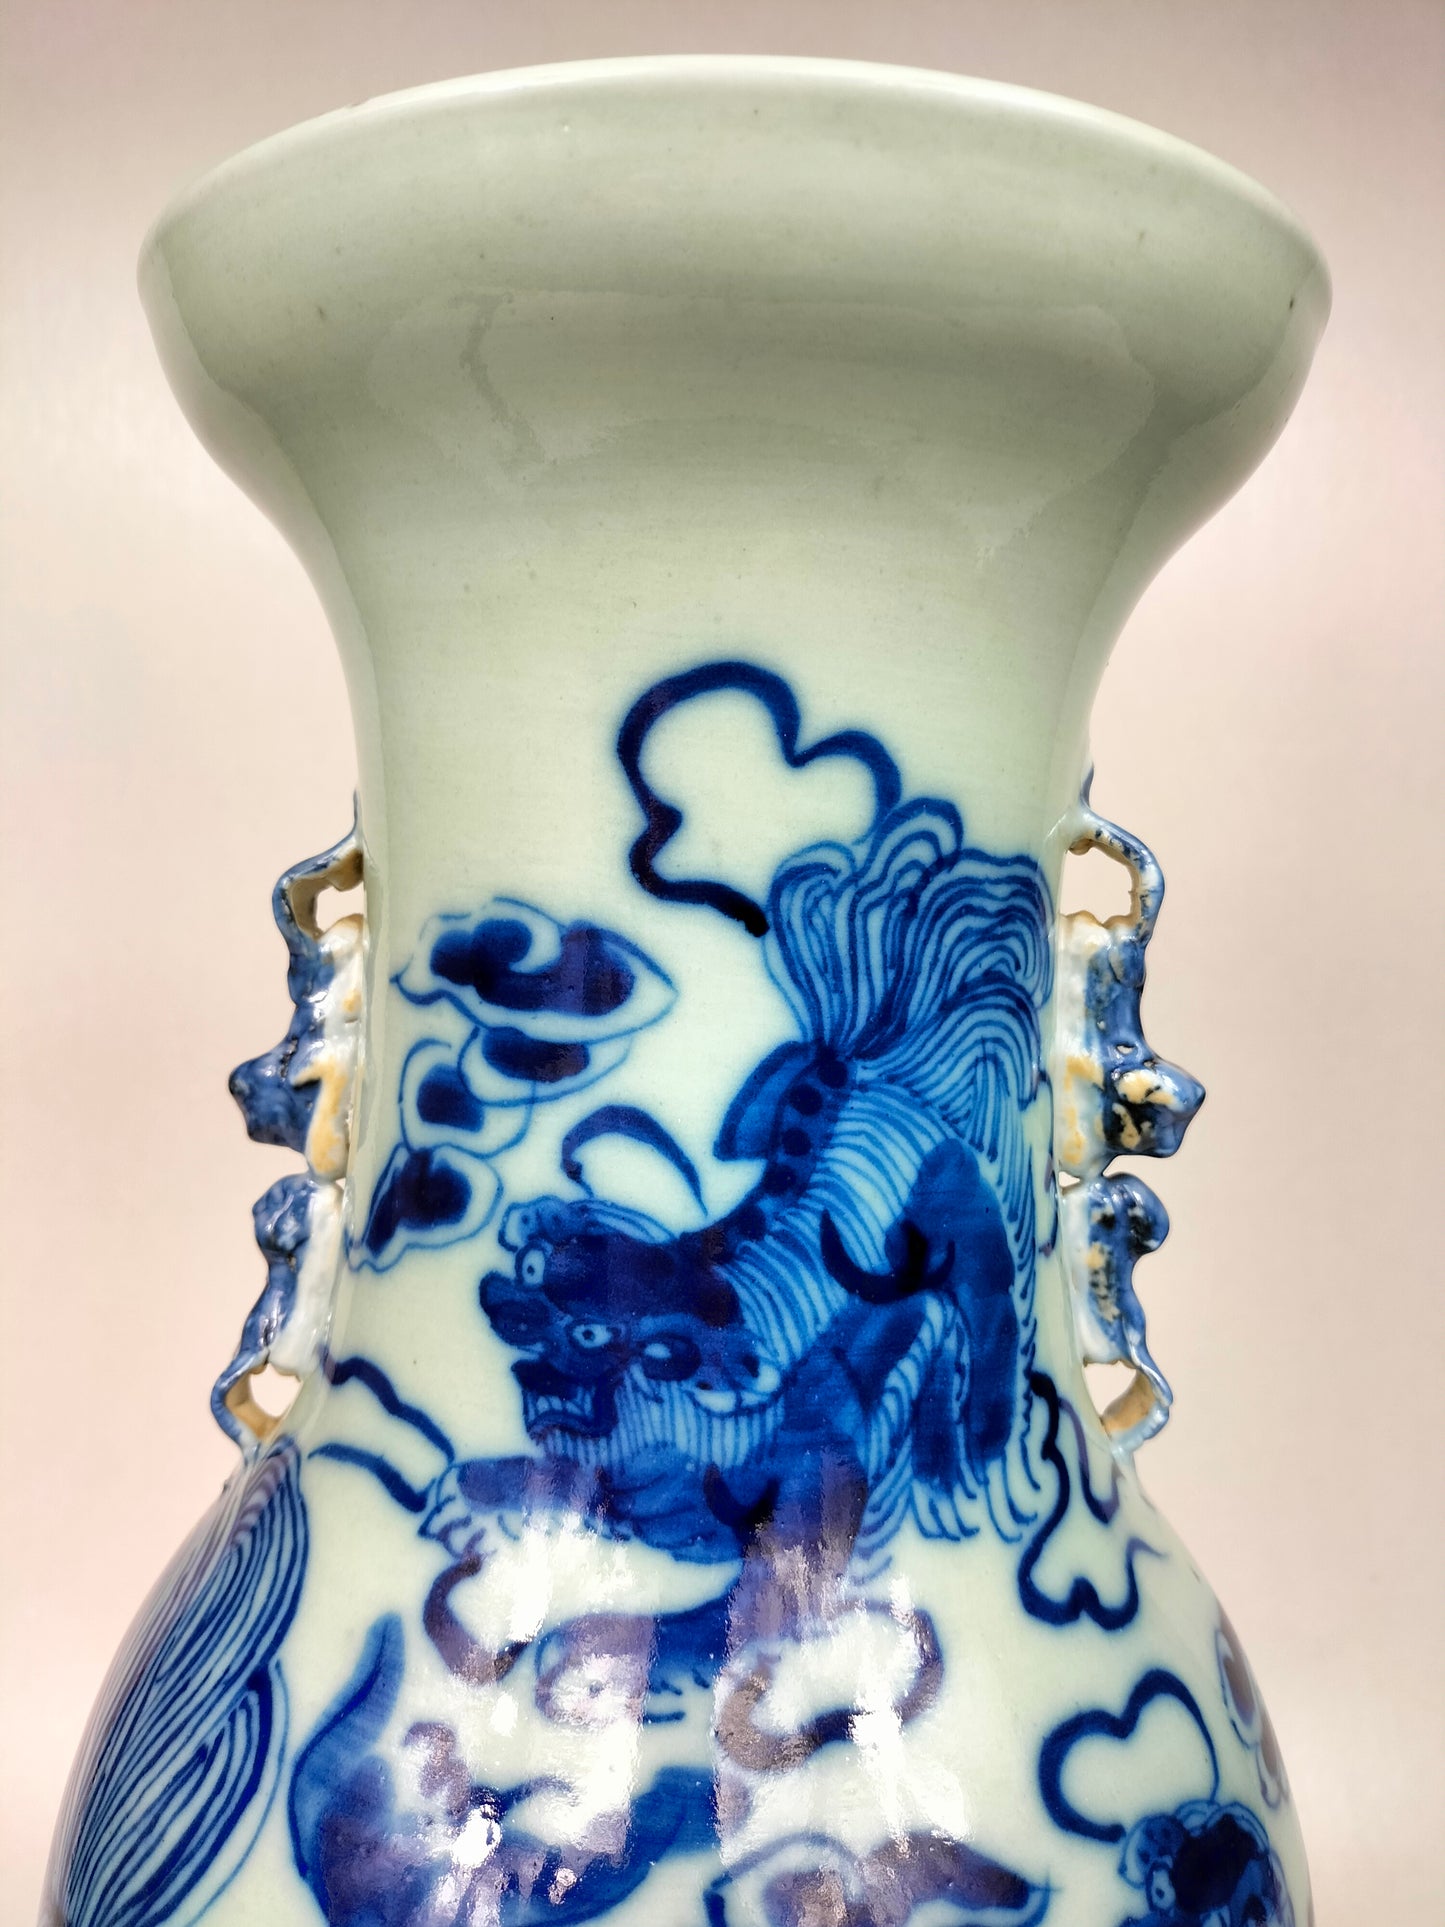 Grand vase chinois ancien de couleur céladon à décor de chiens foo // Dynastie Qing - 19ème siècle